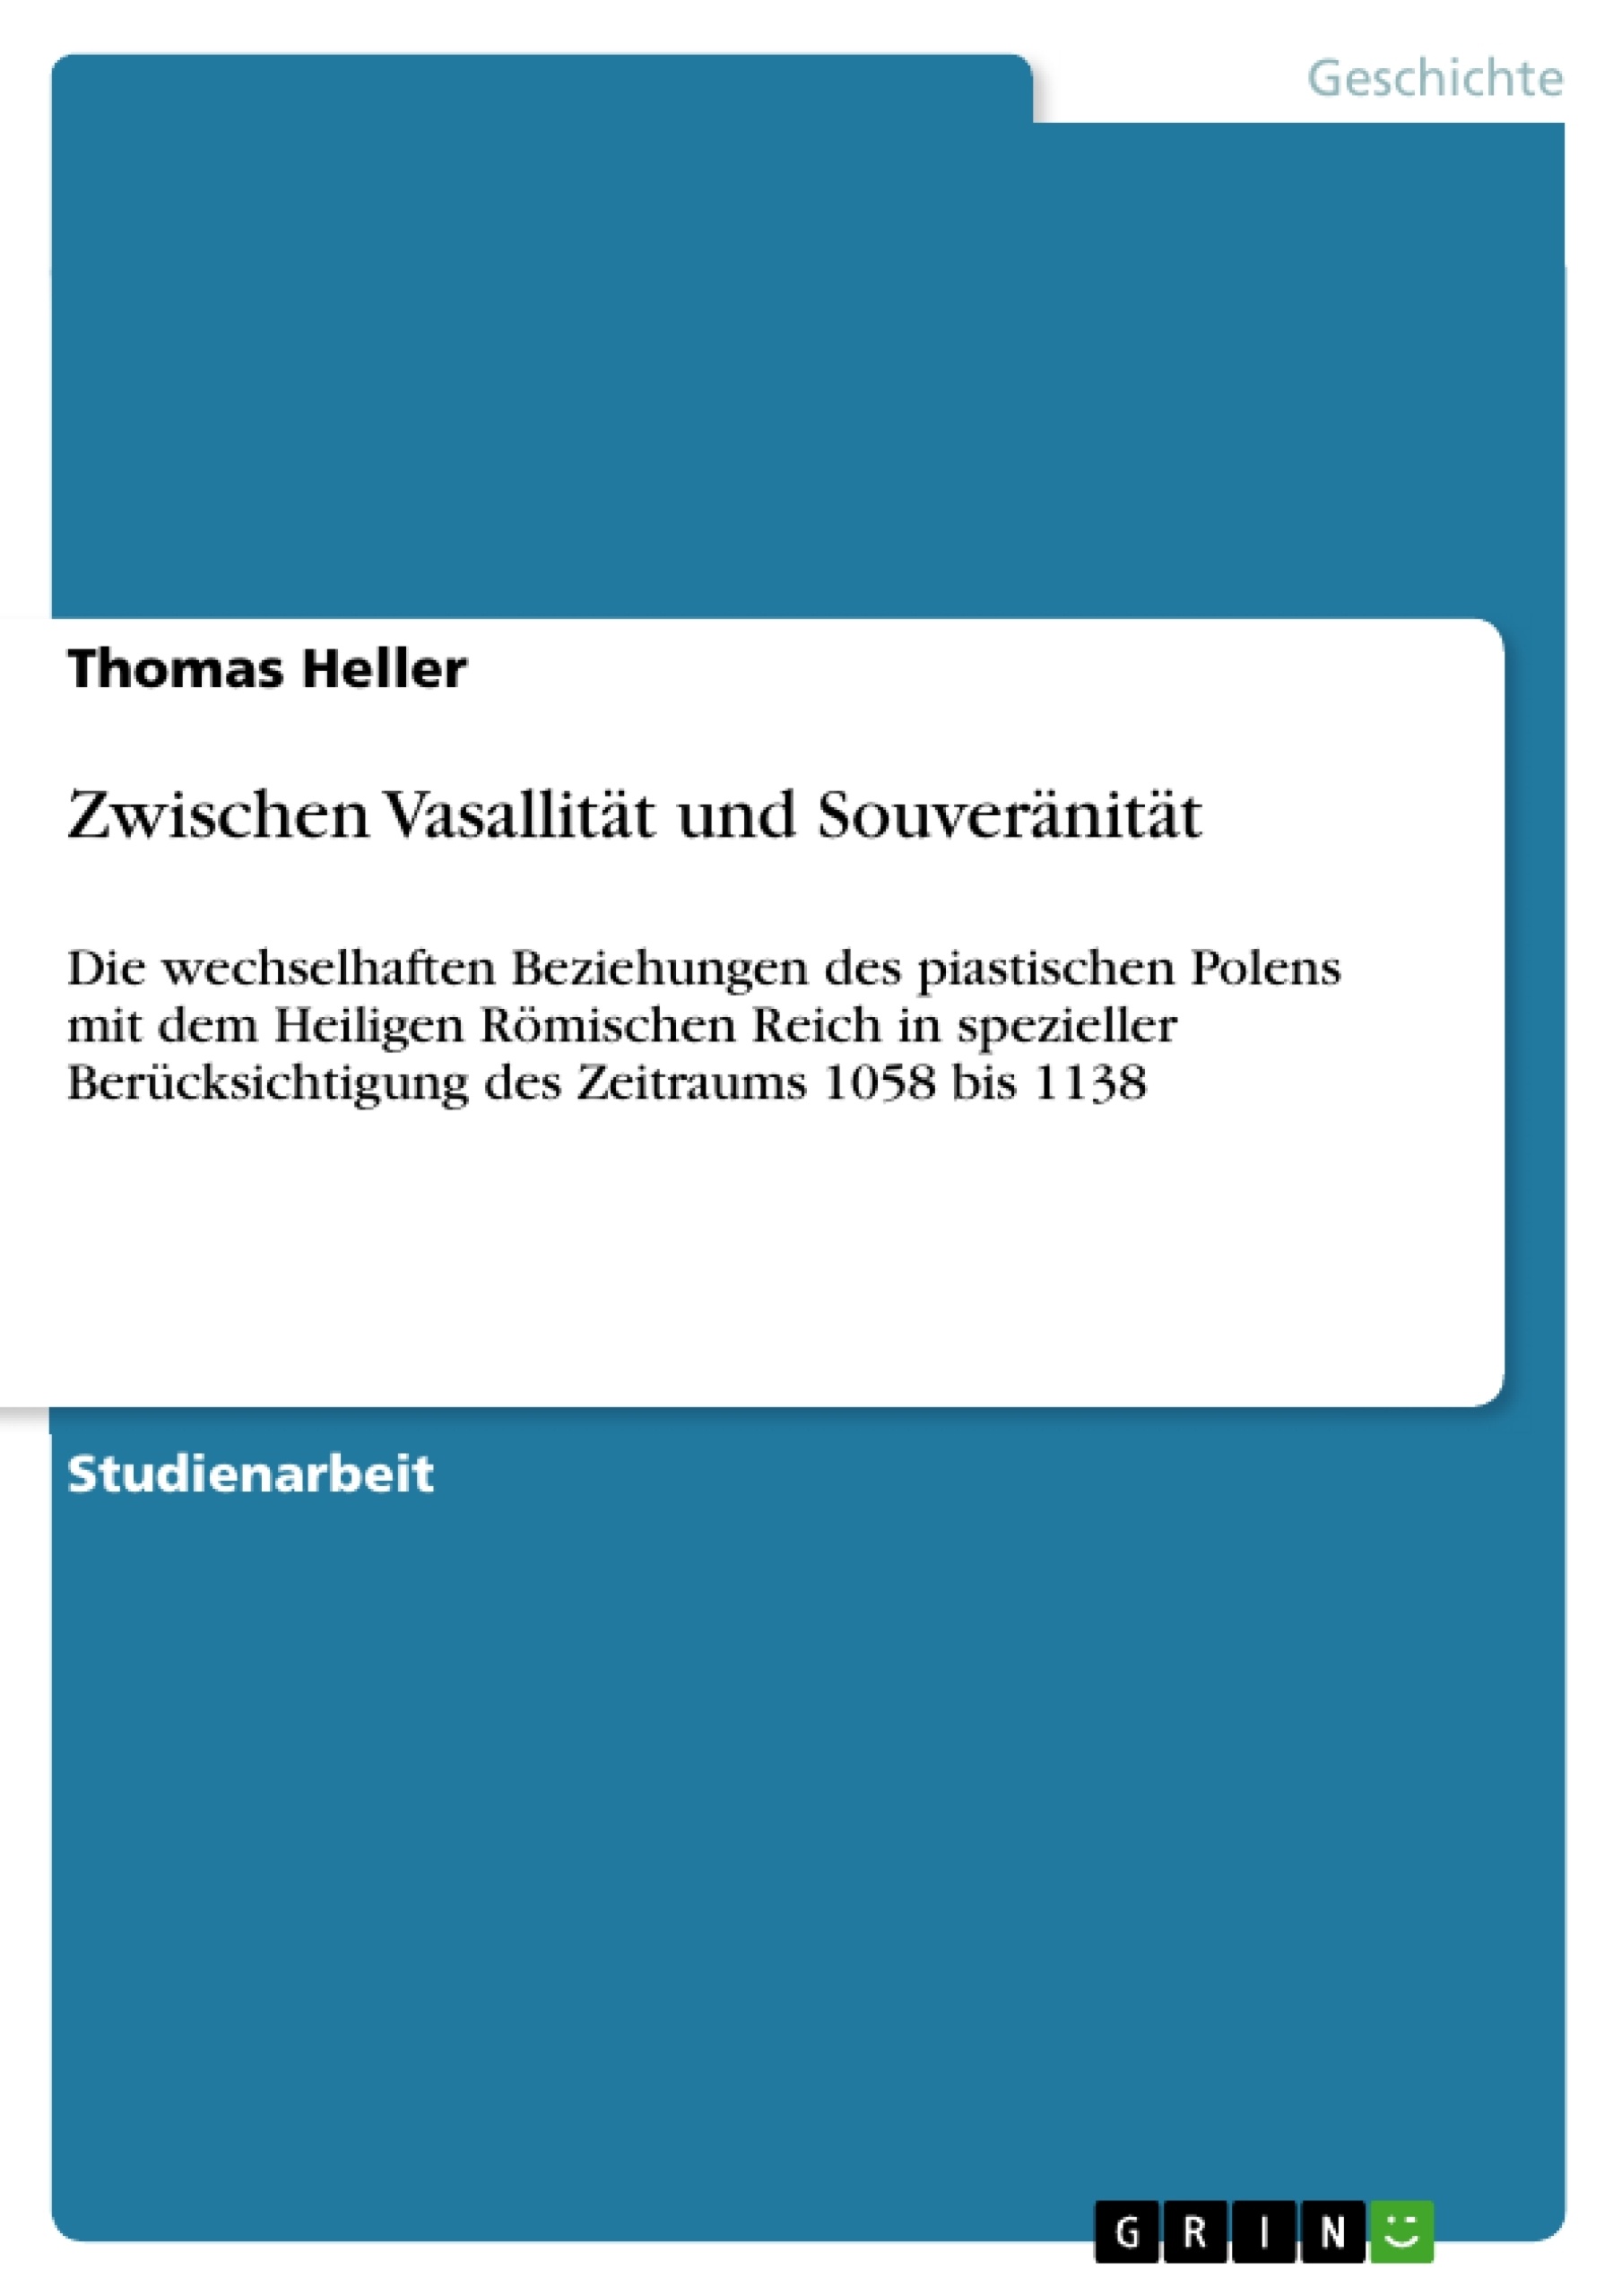 Titre: Zwischen Vasallität und Souveränität